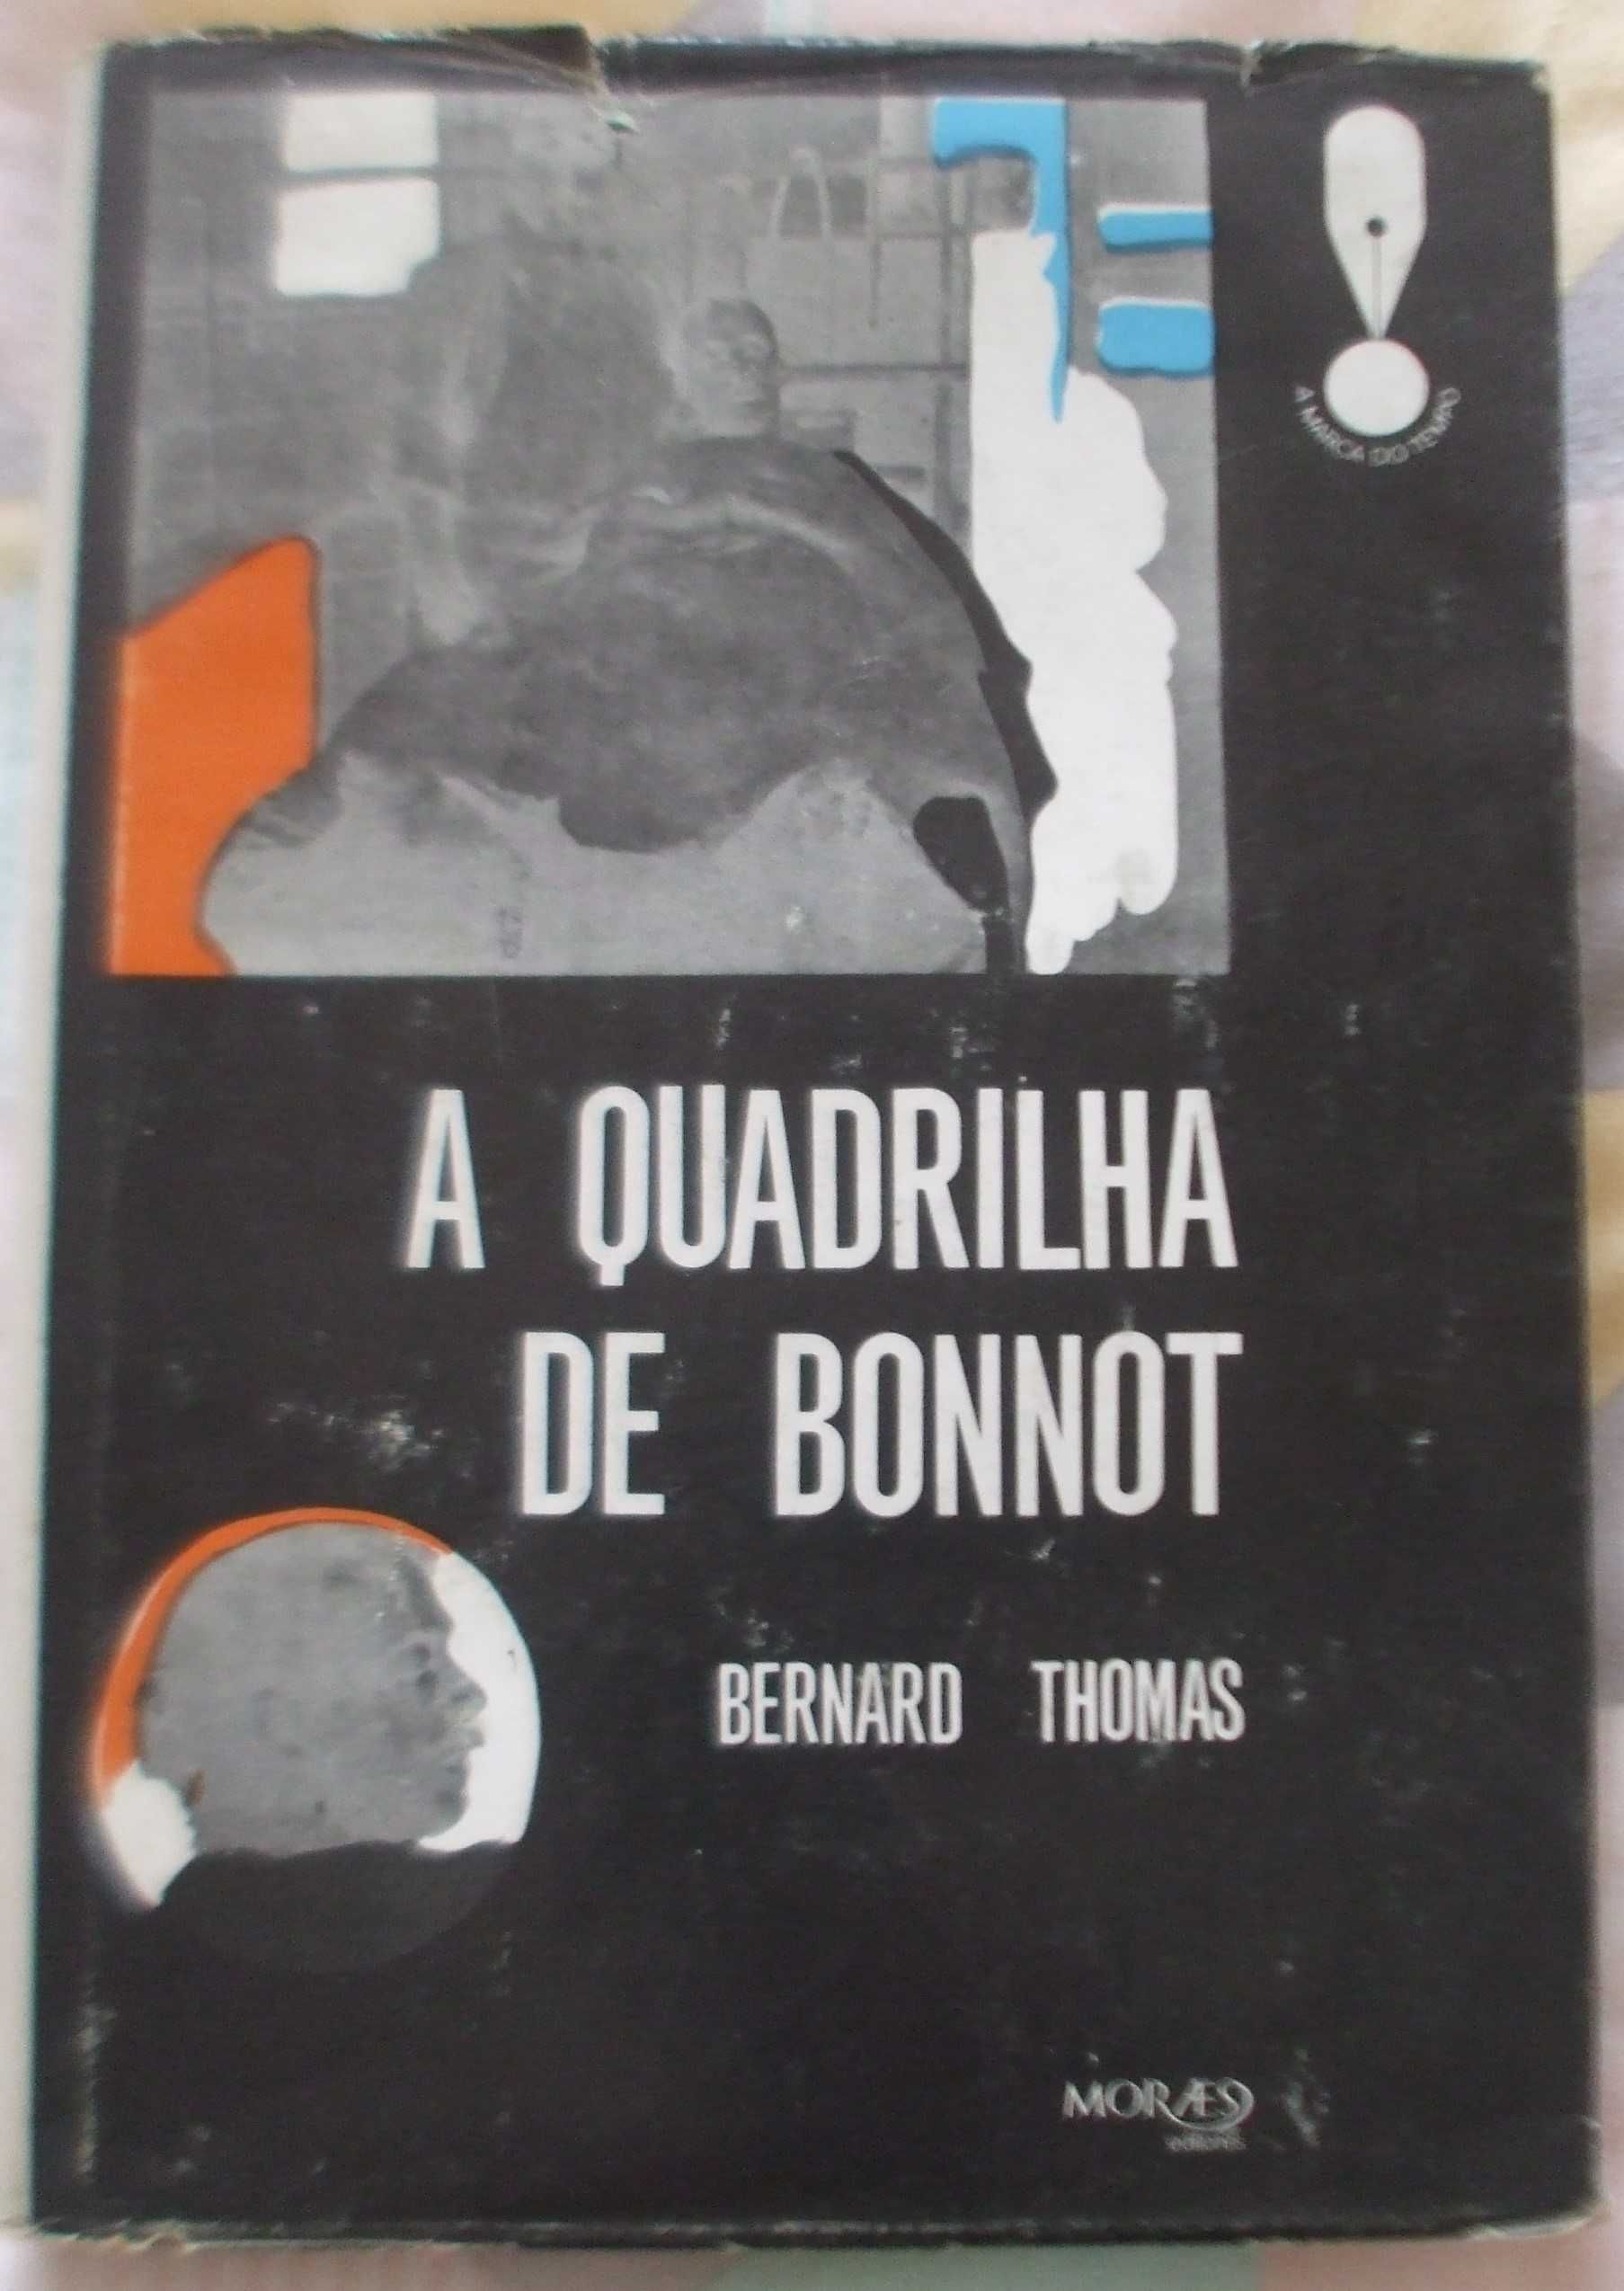 A quadrilha de Bonnot, Bernard Thomas